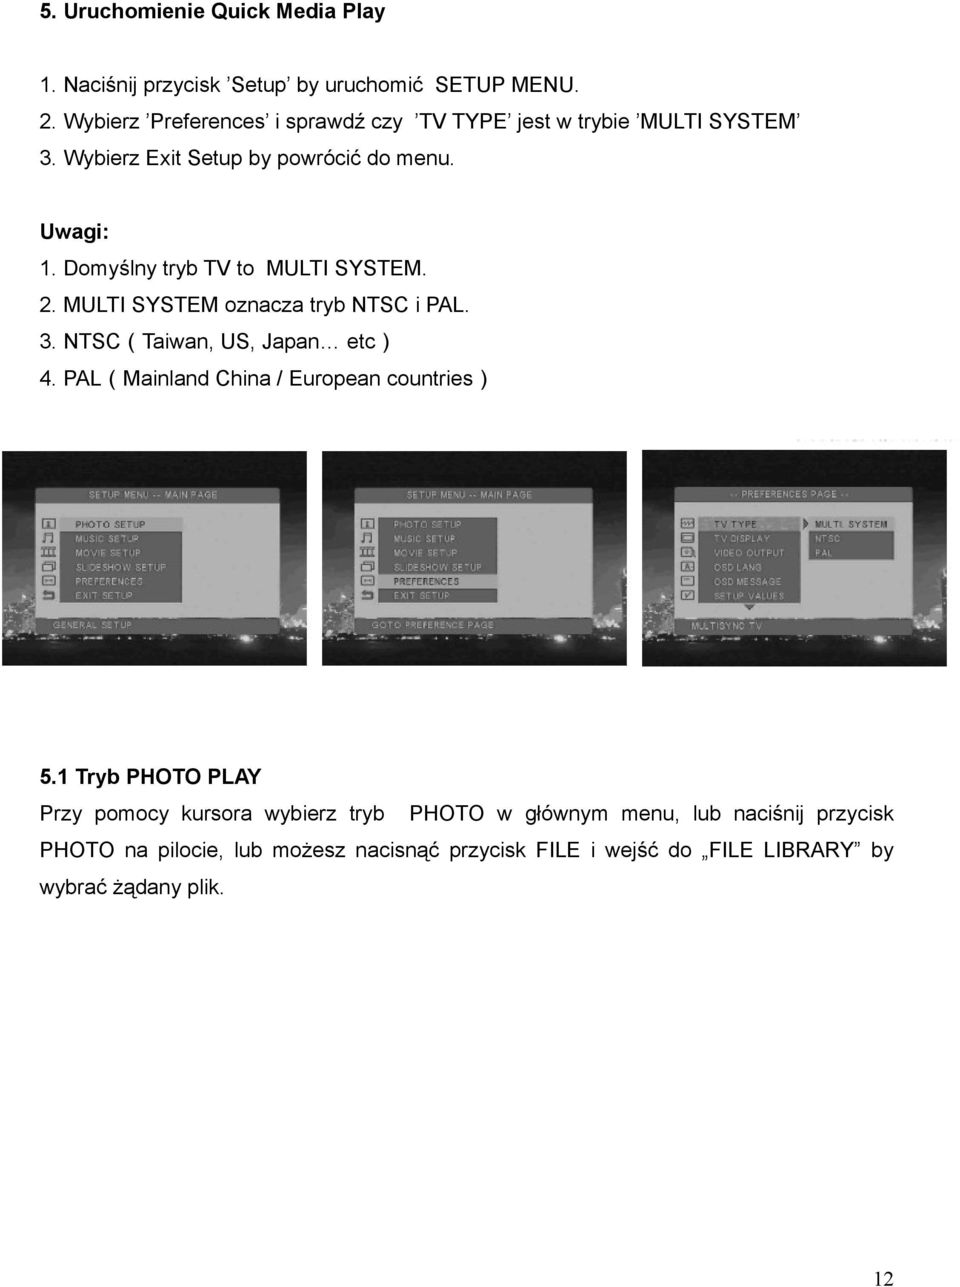 Domyślny tryb TV to MULTI SYSTEM. 2. MULTI SYSTEM oznacza tryb NTSC i PAL. 3. NTSC(Taiwan, US, Japan etc) 4.